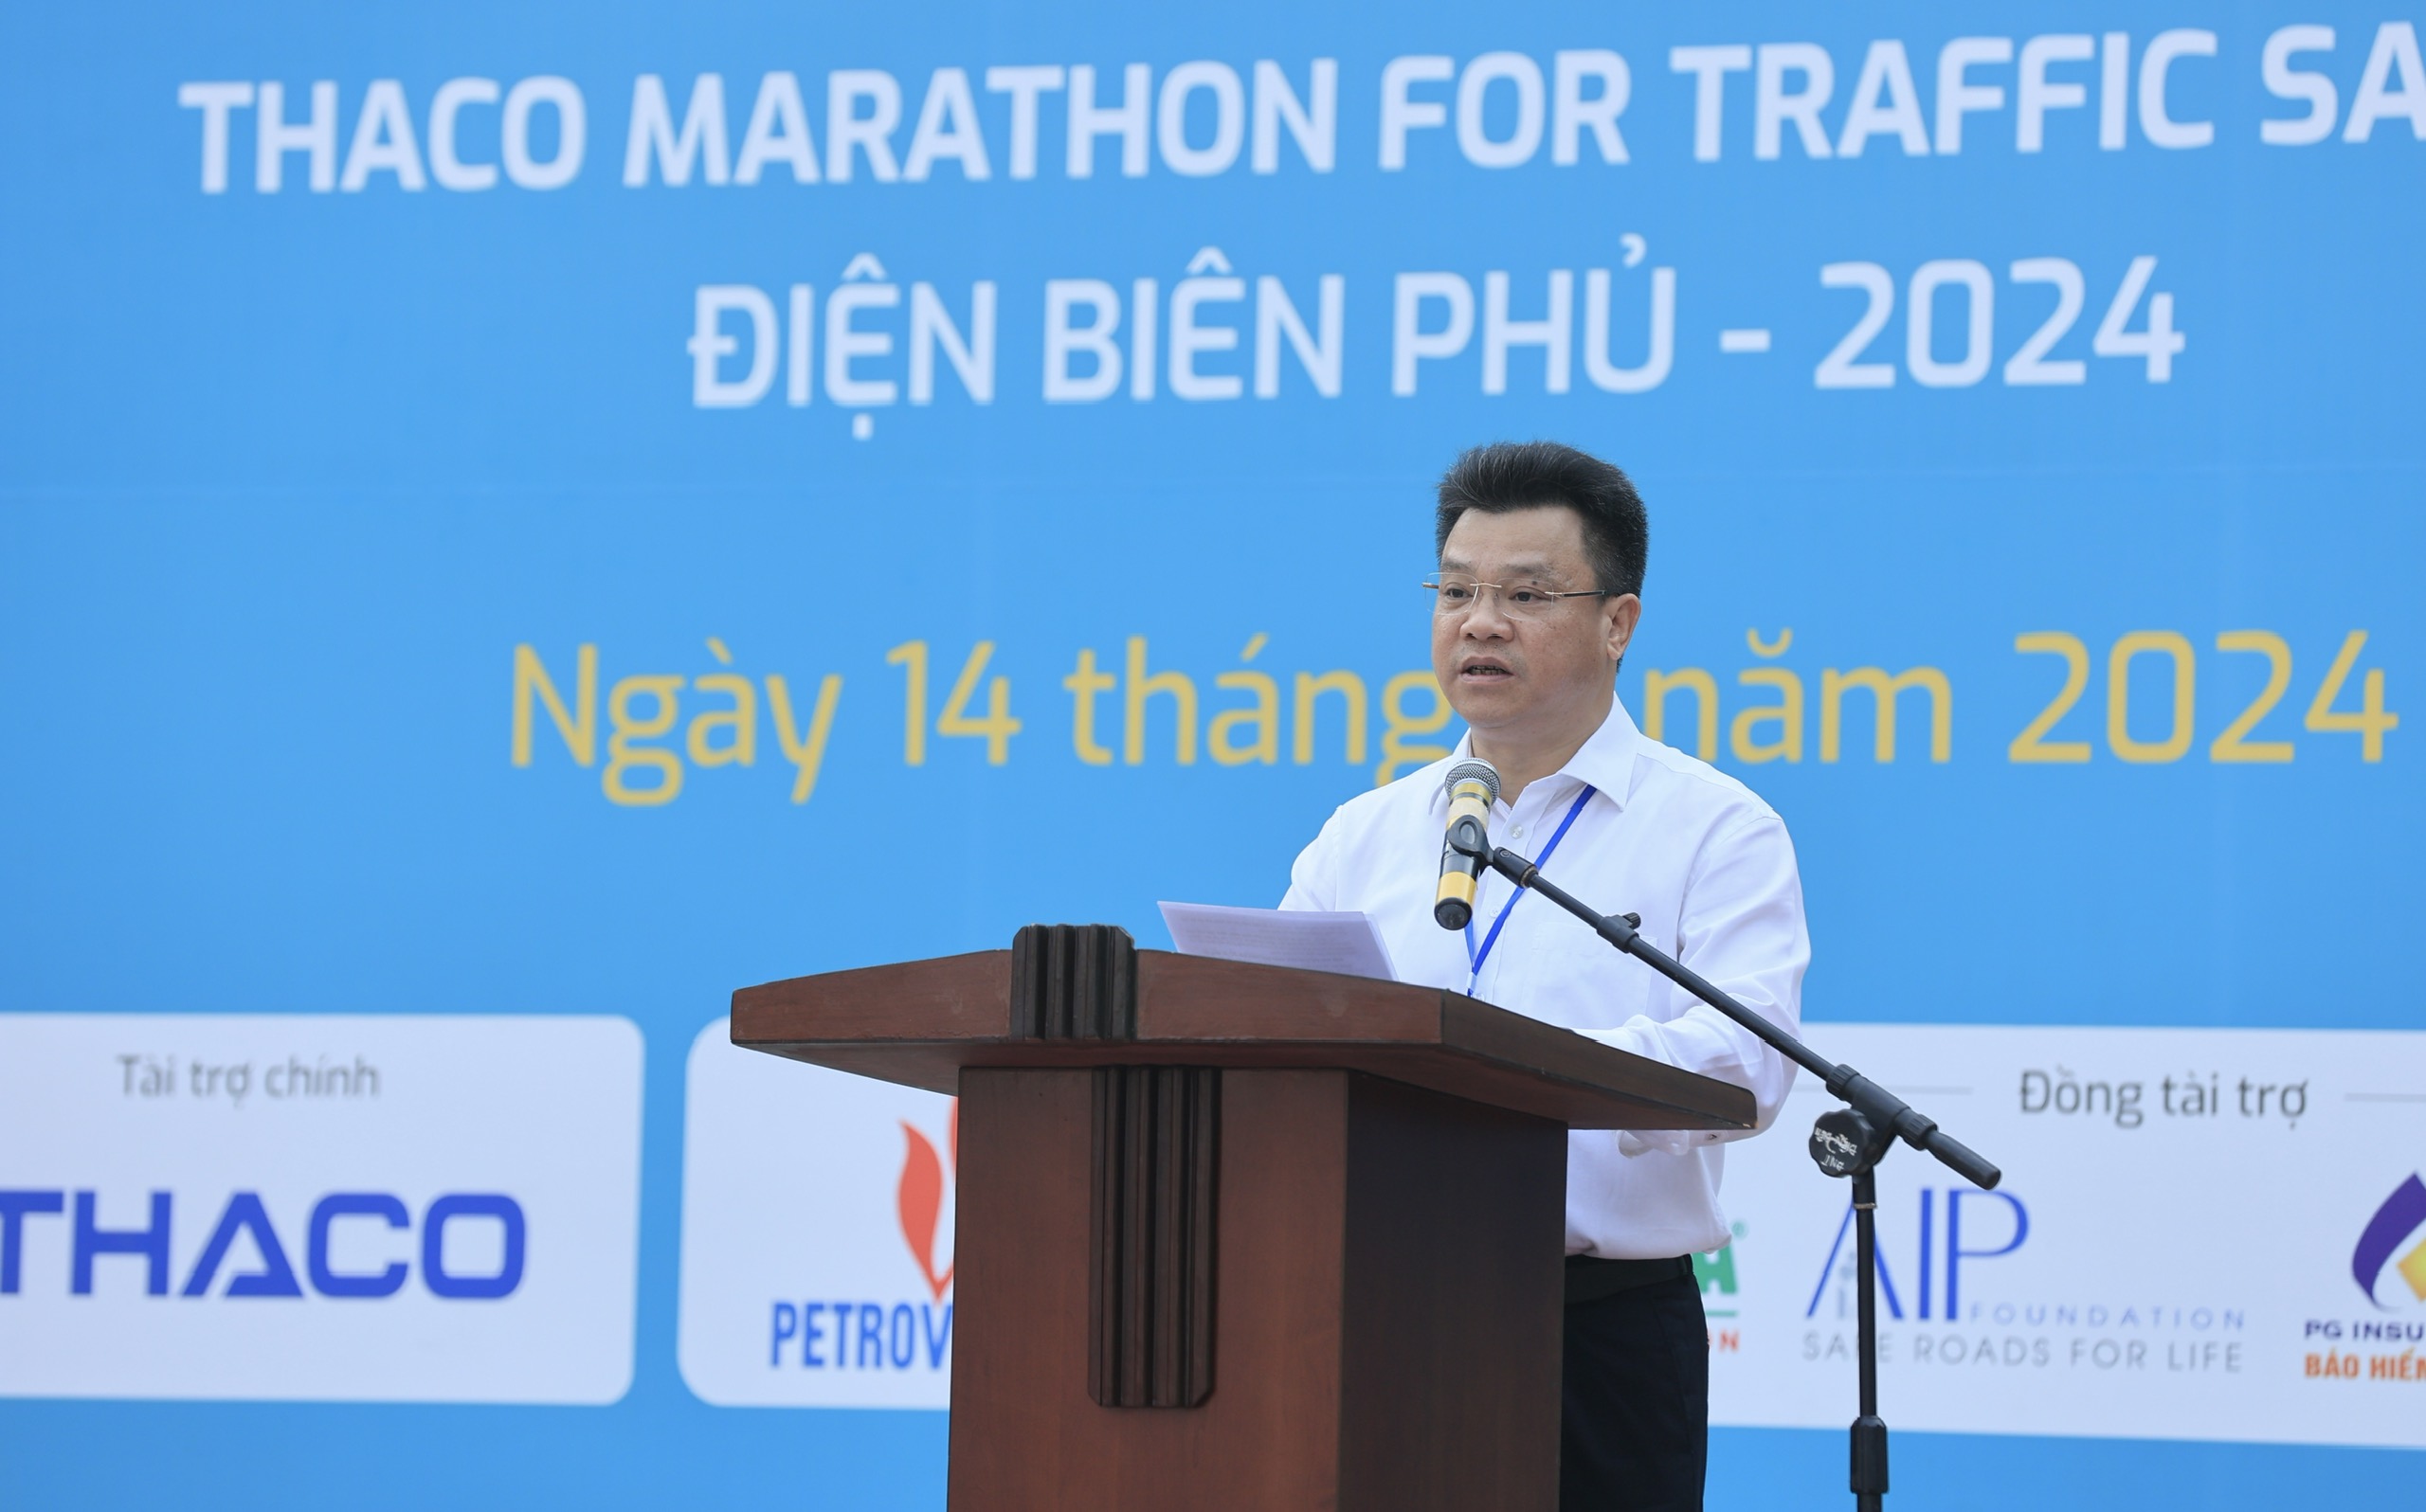 Trực tiếp: Giải THACO Marathon vì ATGT - Điện Biên Phủ 2024 thành công rực rỡ- Ảnh 33.